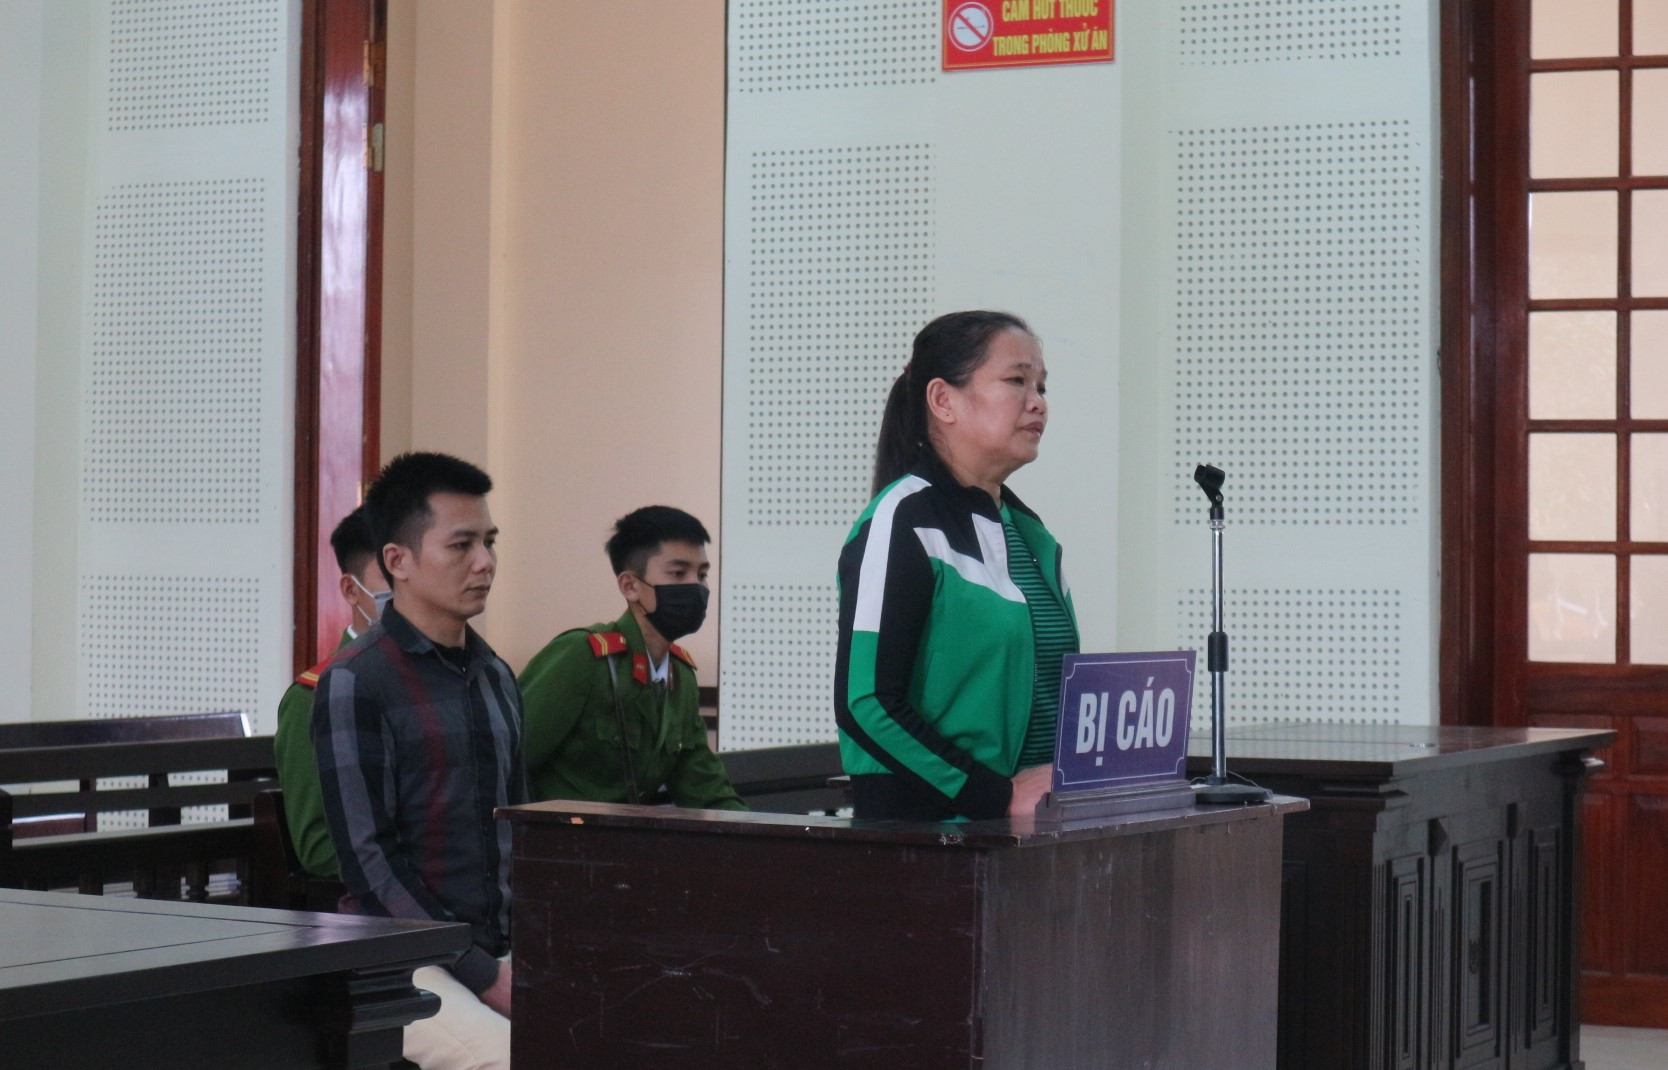 Bị cáo Nguyễn Thị Thịnh lần thứ 3 vào tù với bản án 20 năm vì ma túy. Ảnh: Trần Vũ